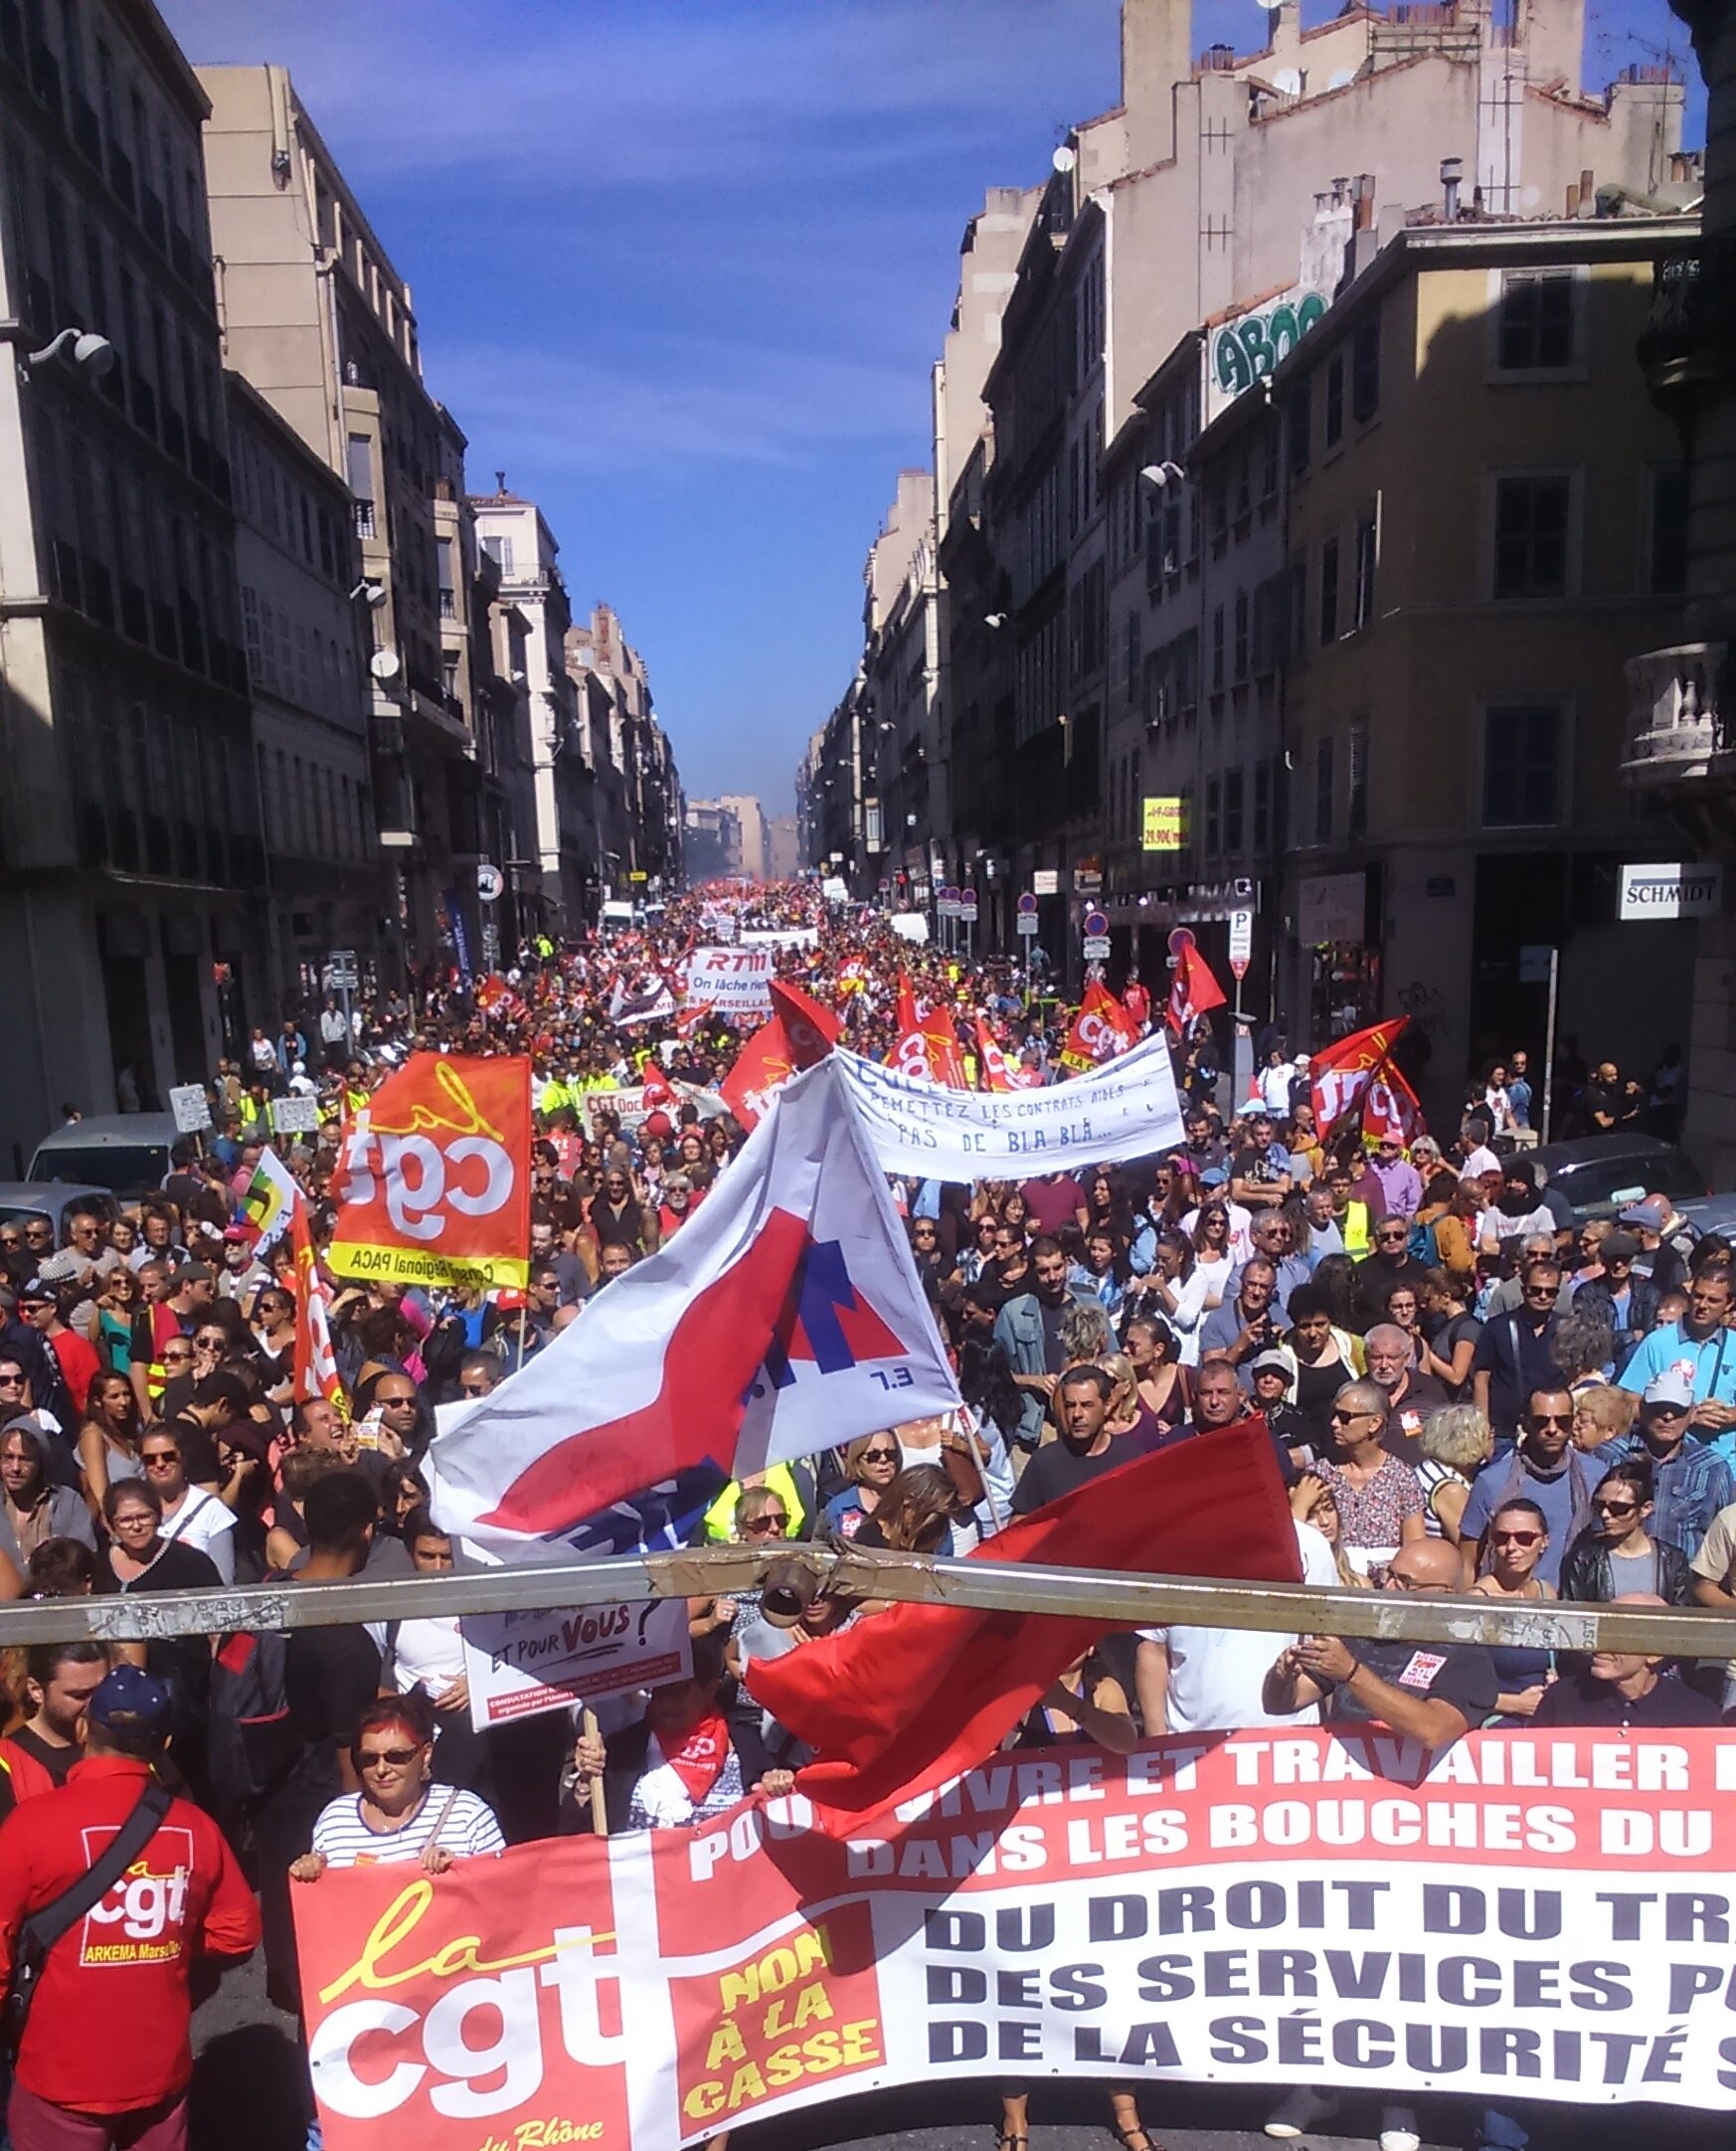 PAME Solidarité avec les travailleurs de France contre les persécutions syndicales!